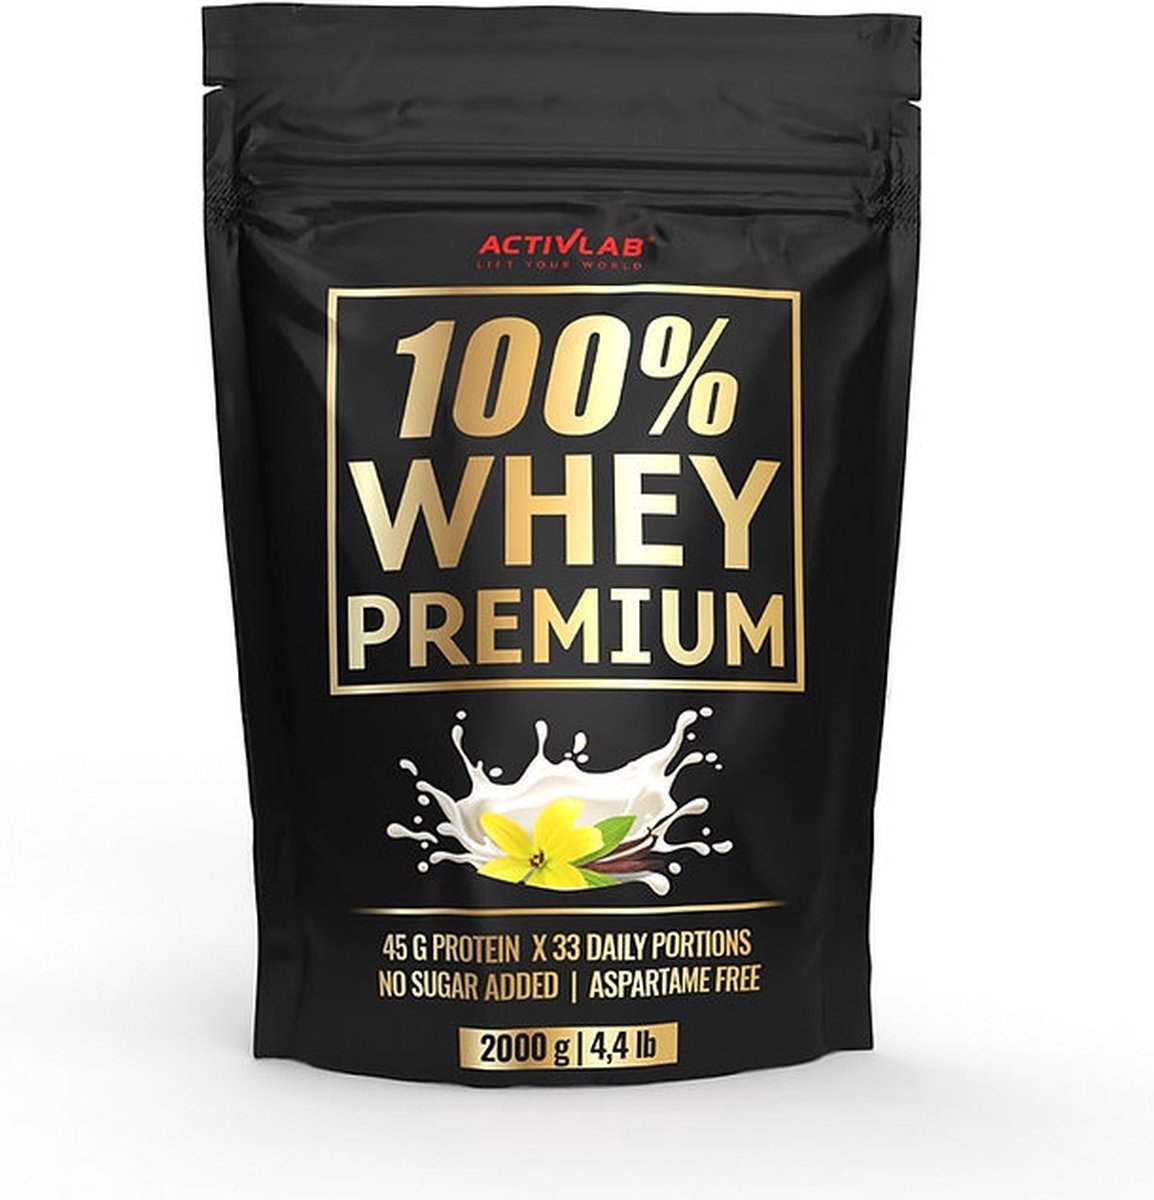 Activlab 100% Whey Premium Protein - Whey protein - Proteine poeder - Eiwitshake - 2000g - 66 servings - Vanille